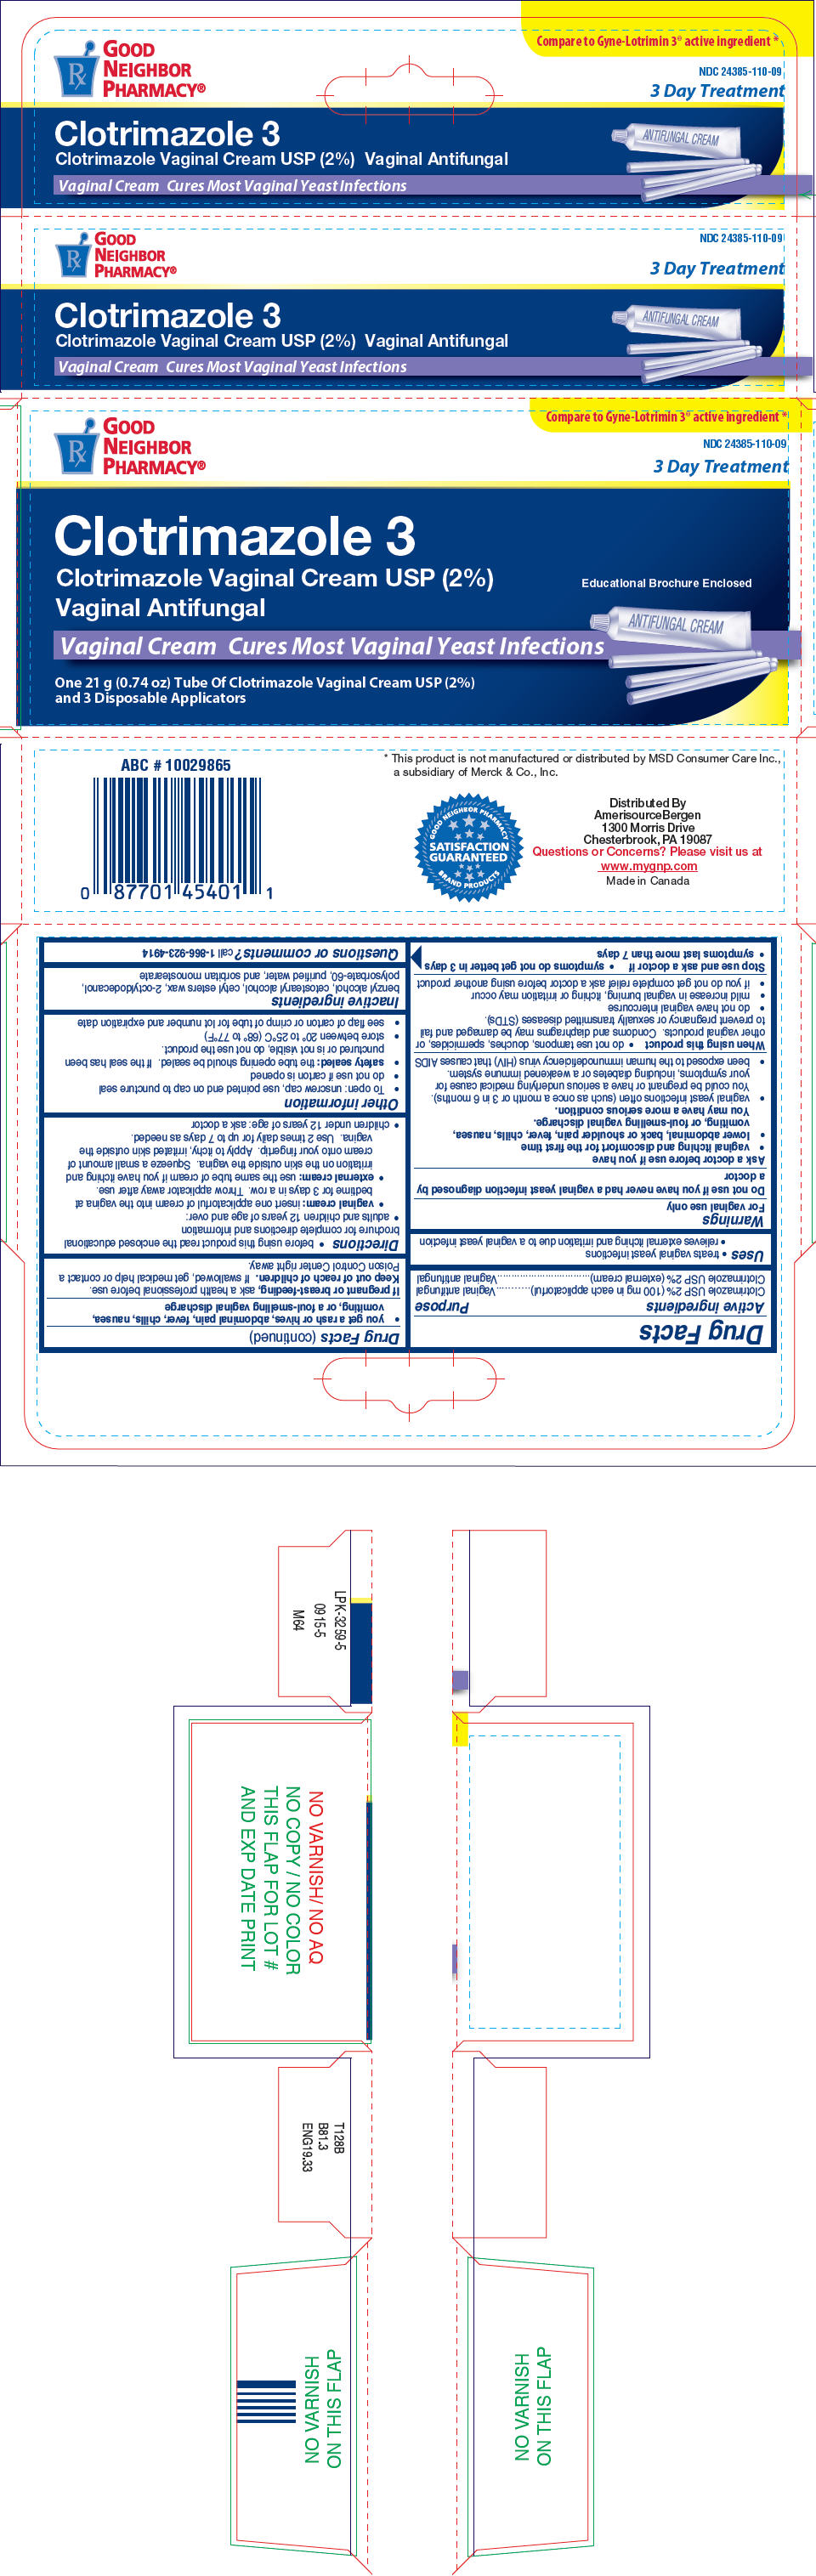 PRINCIPAL DISPLAY PANEL - 21 g Tube Carton